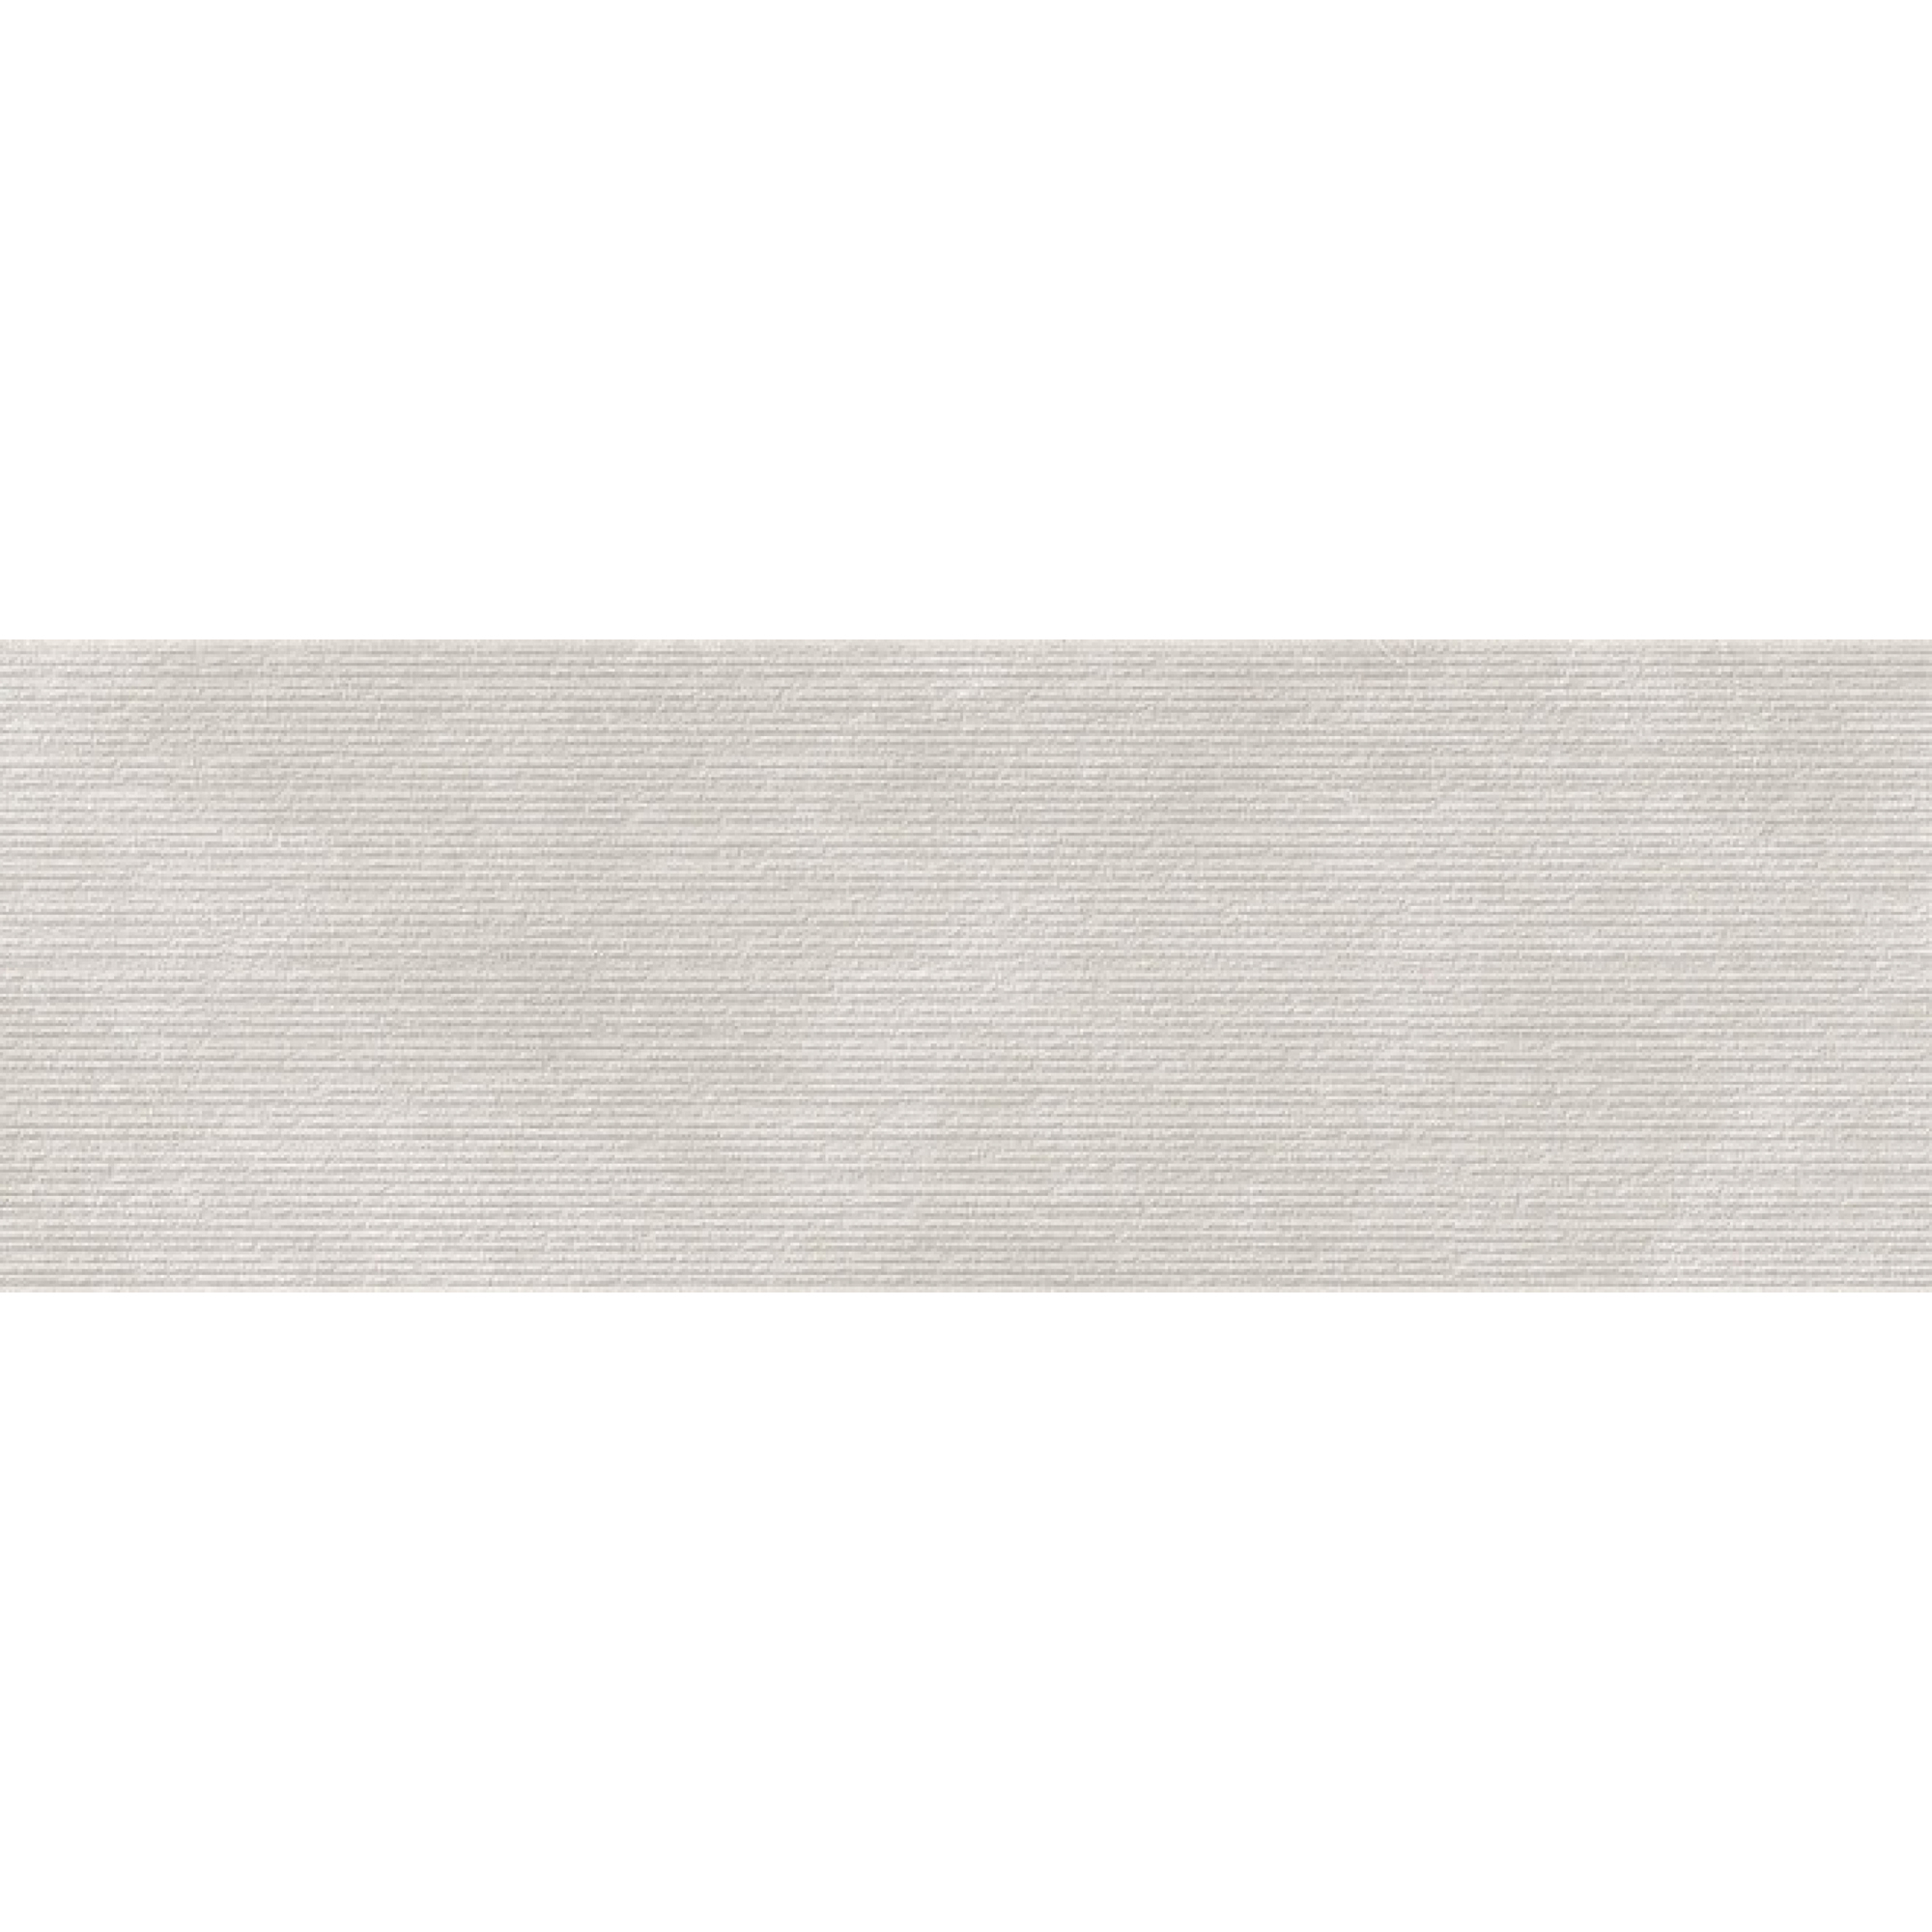 Плитка Kerama Marazzi Эскориал серый структура обрезной 40x120 см 14012R плитка kerama marazzi про матрикс светлый беж обрезной натуральный 60x60 см dd601800r